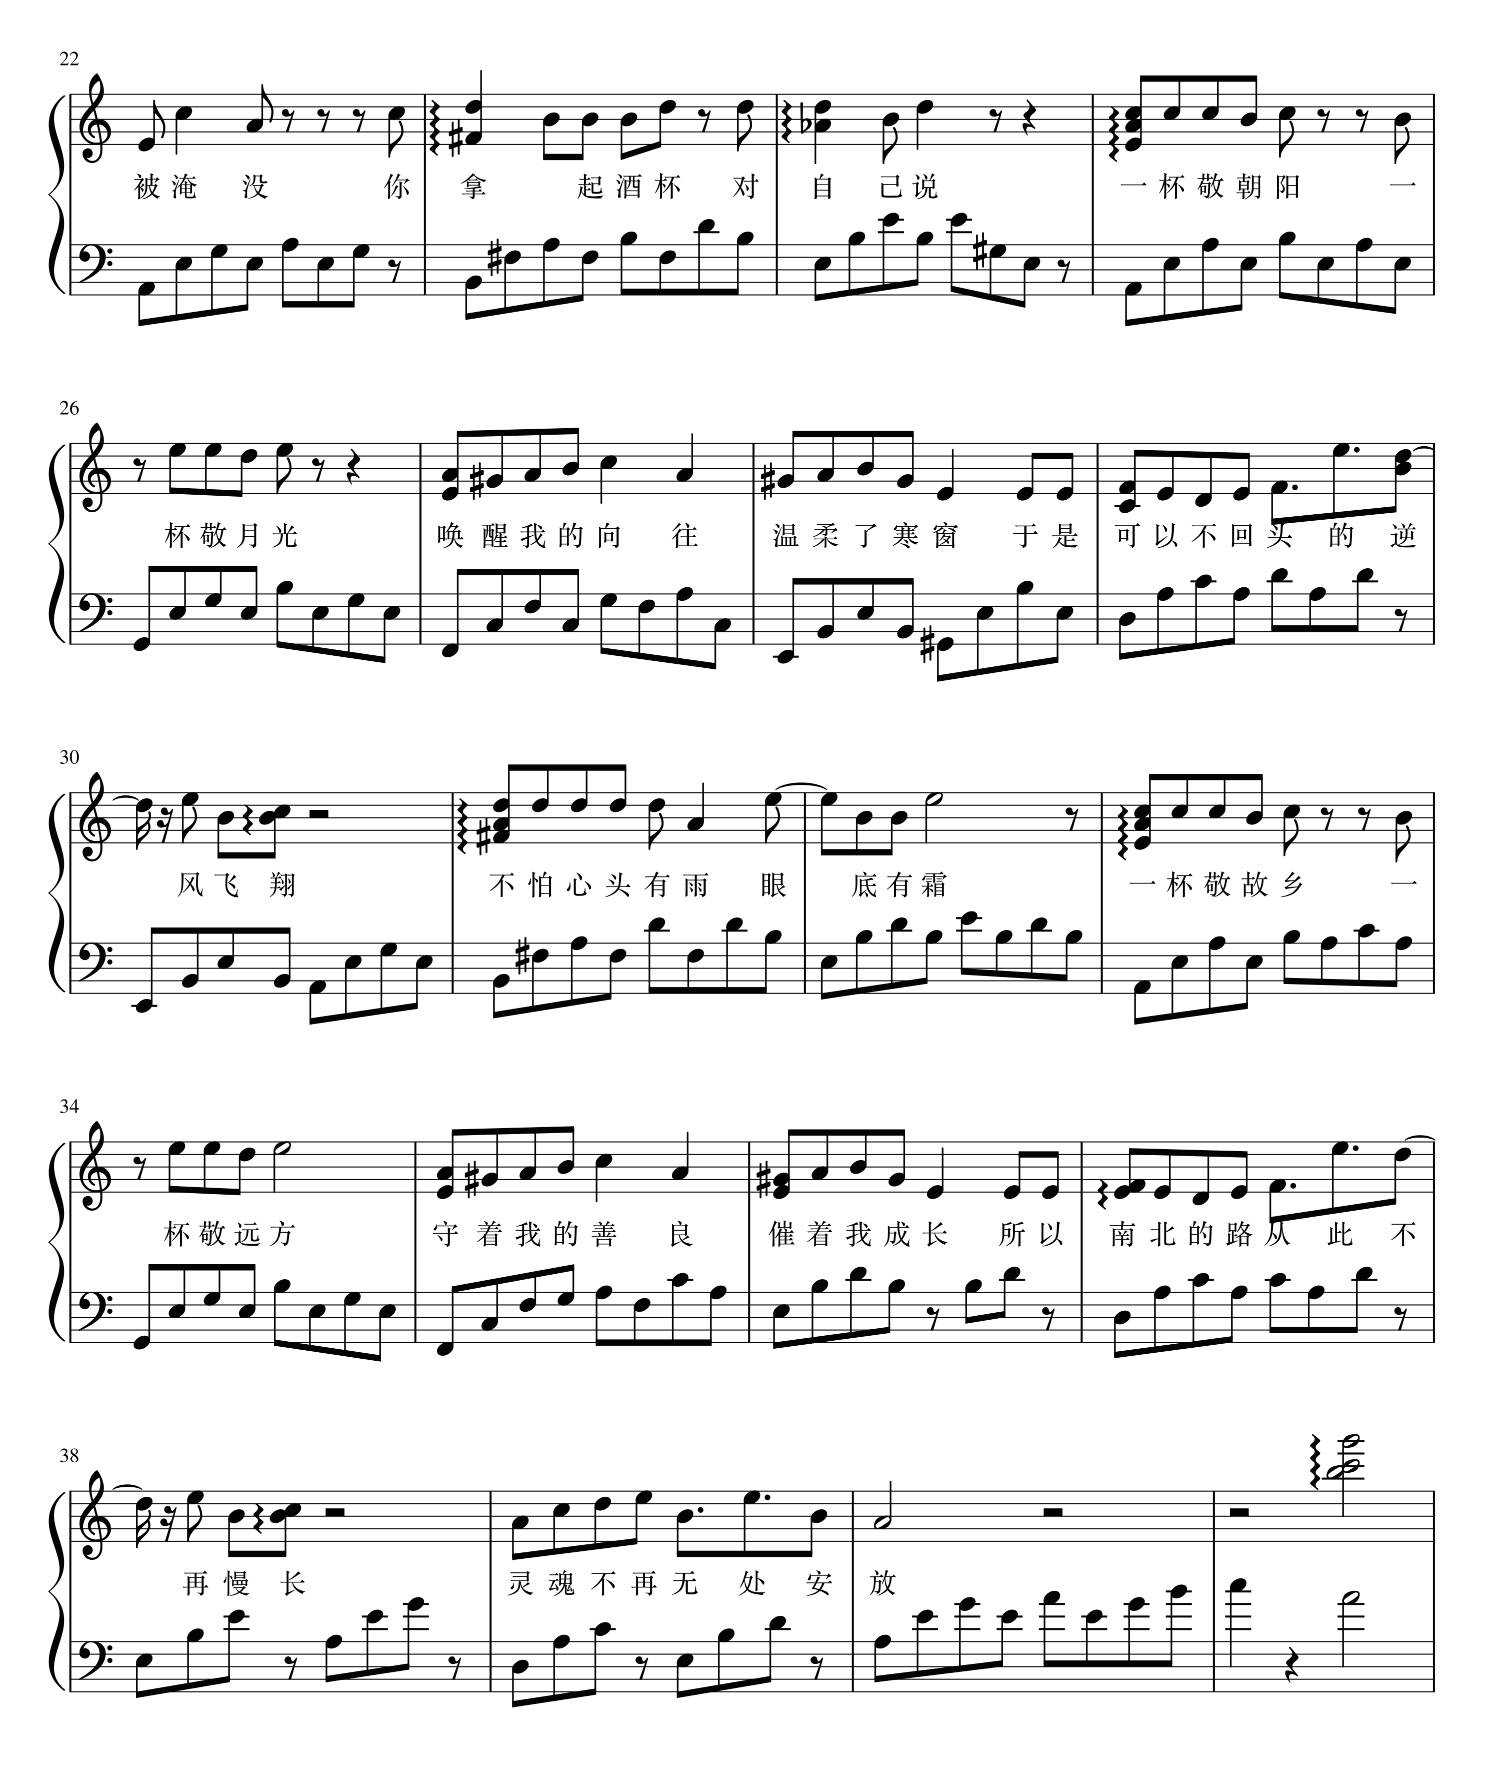 这个版本的《消愁》前奏一起,彻底催泪了!流行钢琴教学